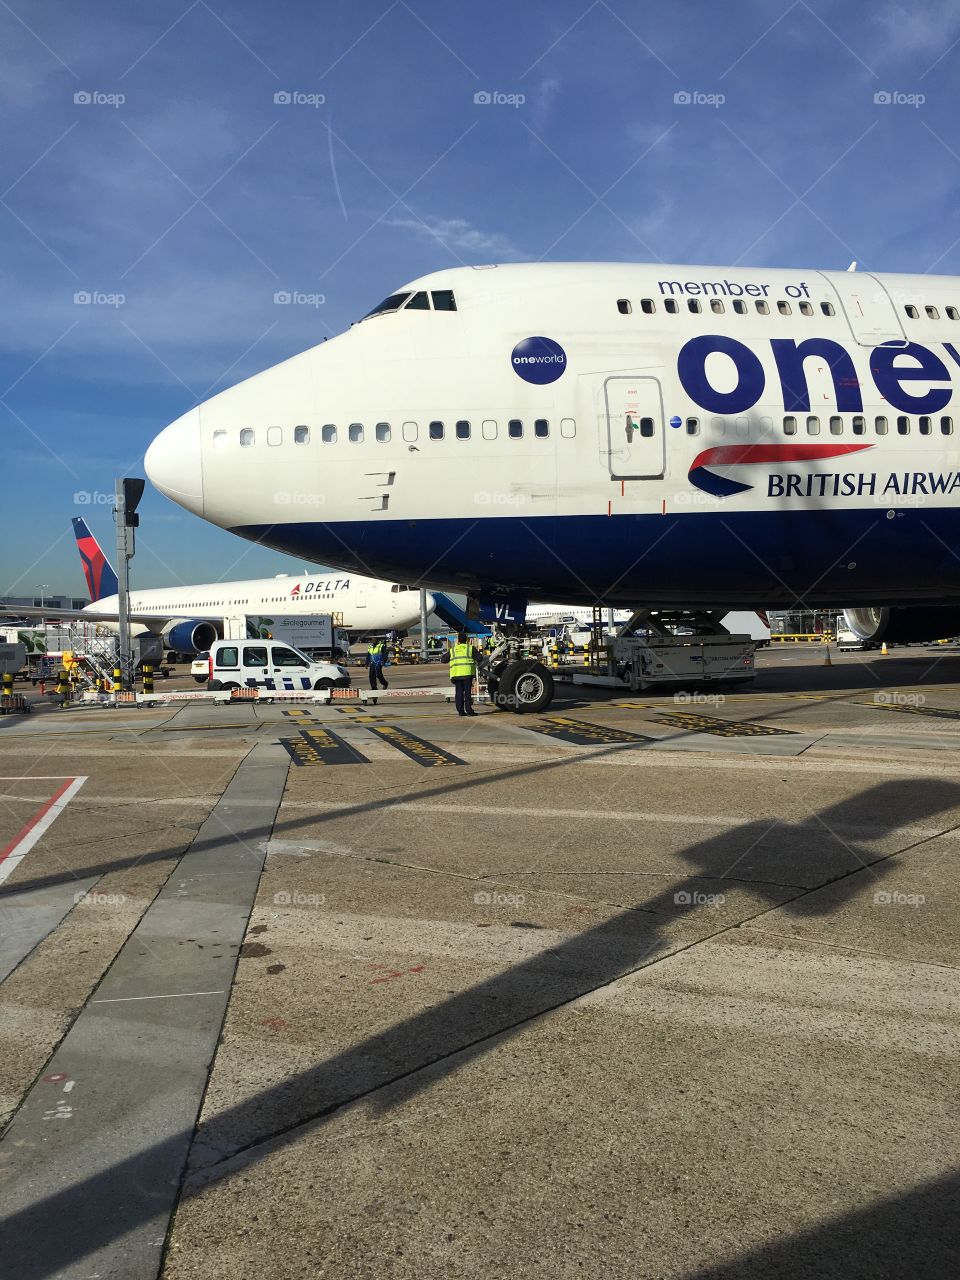 British Airways plane waiting for passengers in London